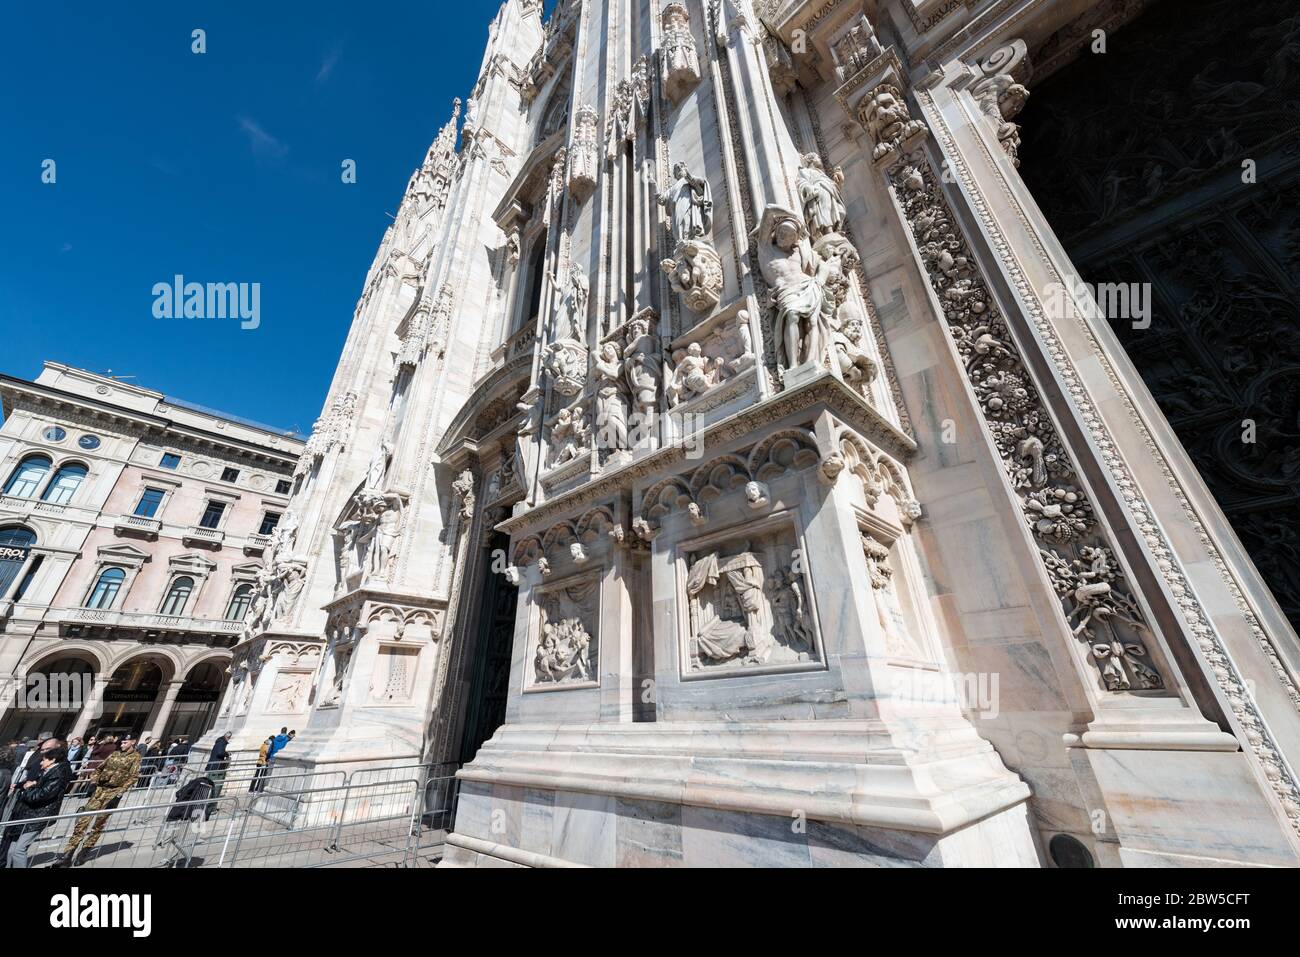 MILANO, ITALIA - 16 MARZO 2018: Immagine grandangolare del Duomo di Milano, un punto di riferimento di Milano. Foto Stock